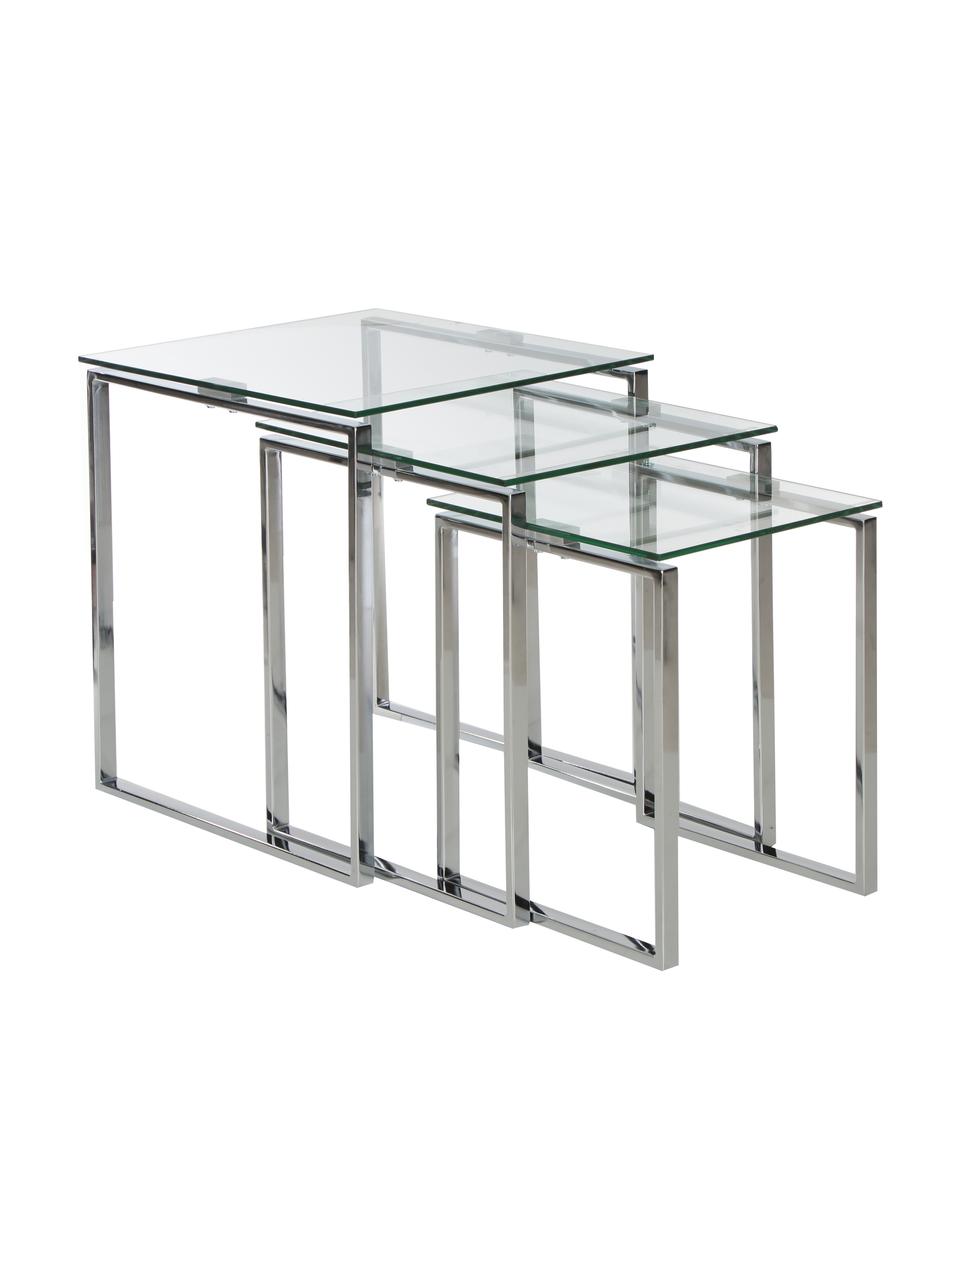 Beistelltisch 3-Set Katrine mit Glasplatte, Gestell: Stahl, verchromt, Tischplatte: Sicherheitsglas, Chromfarben, Transparent, Set mit verschiedenen Größen